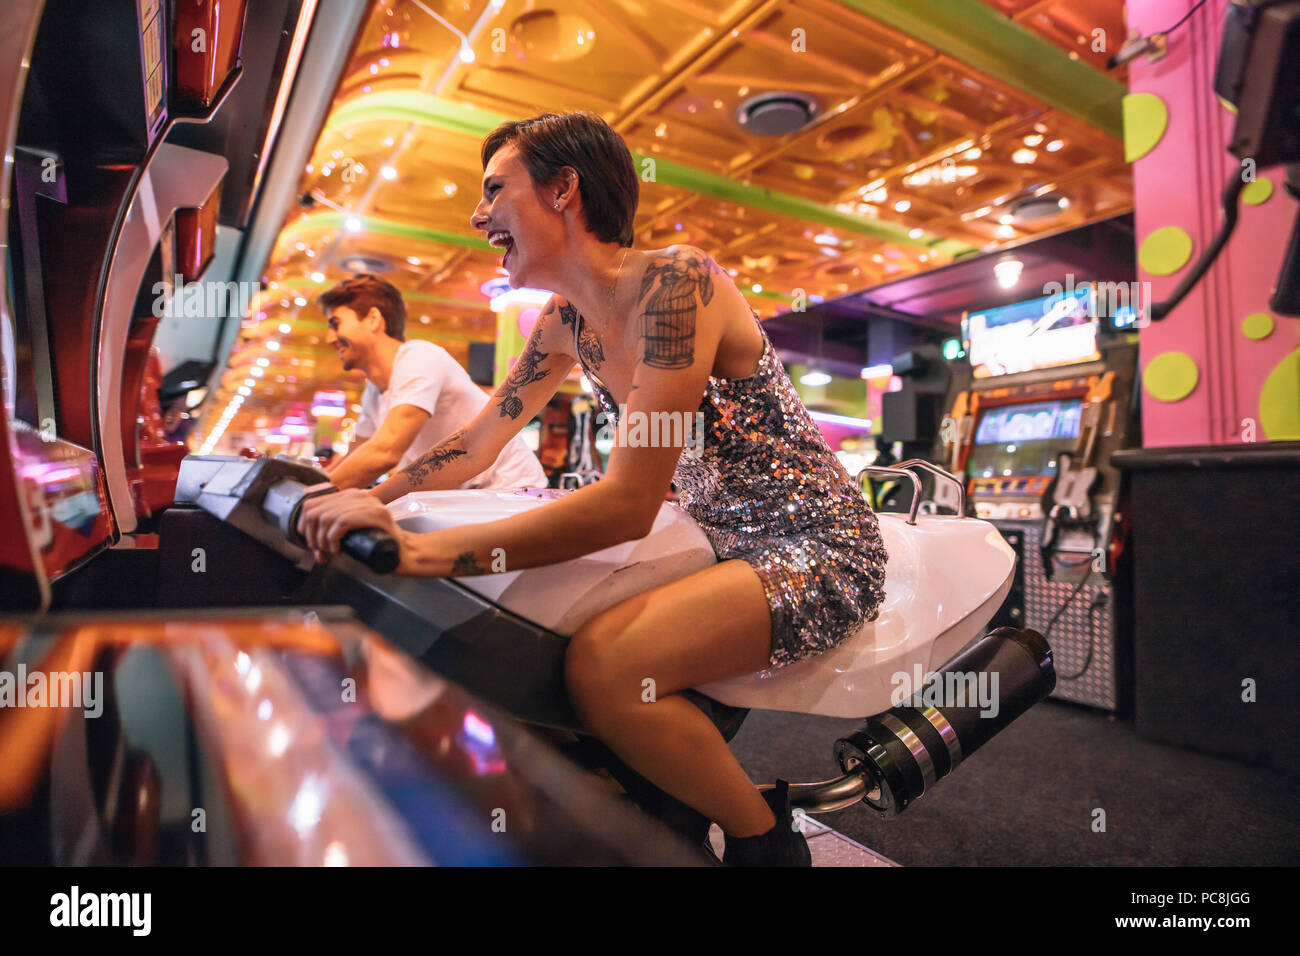 Feliz pareja divertirse jugando juegos de carreras arcade en un salón de juegos. Emocionados mujer jugando un juego de carreras arcade sentado en una bicicleta de carreras. Foto de stock